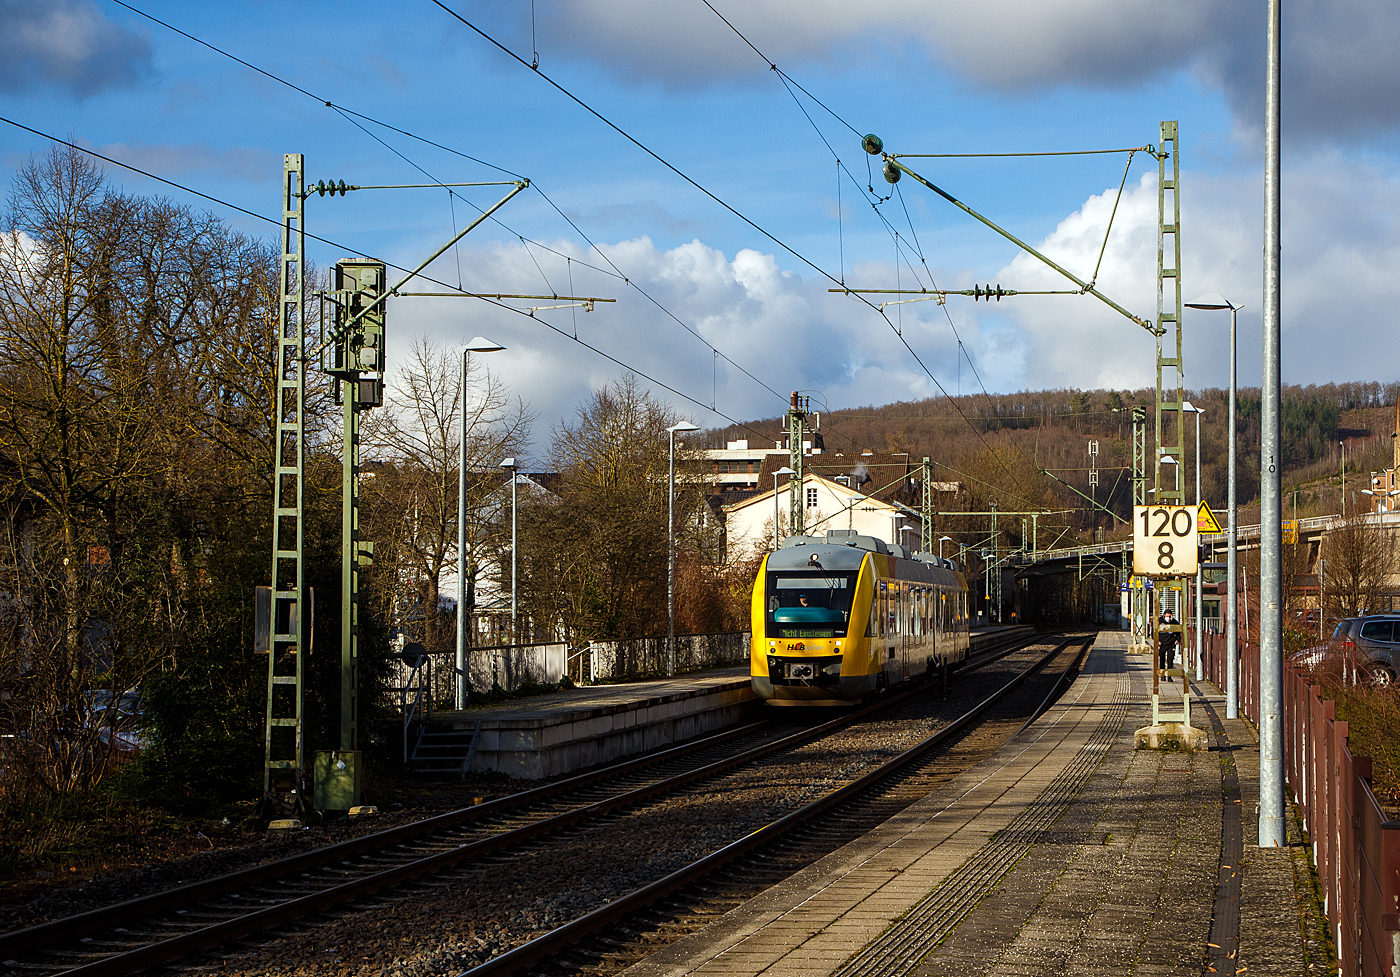 Der VT 255 (95 80 0648 155-9 D-HEB / 95 80 0648 655-8 D-HEB) ein Alstom Coradia LINT 41 der HLB (Hessische Landesbahn GmbH), fährt am 17.01.2023,  als RB 93  Rothaarbahn  (Bad Berleburg - Kreuztal -Siegen - Betzdorf), vom Bahnhof Kirchen (Sieg) weiter nach Betzdorf (Sieg).

Betzdorf (Sieg) ist der Ziel- und Endbahnhof, daher steht nun am Zugzielanzeiger „Nicht Einsteigen“.
